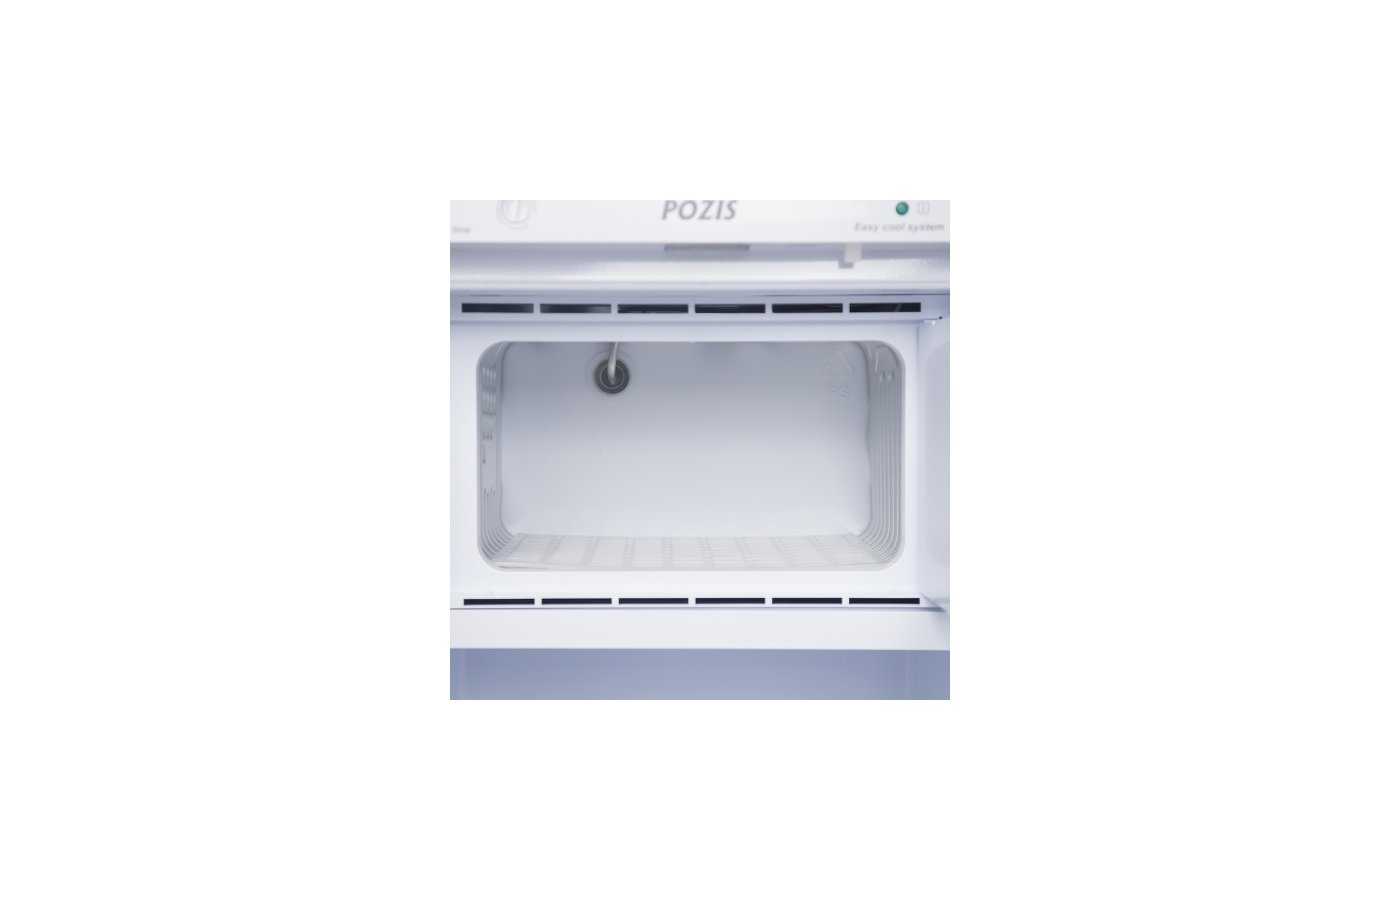 Pozis fh-250-1 white отзывы покупателей и специалистов на отзовик